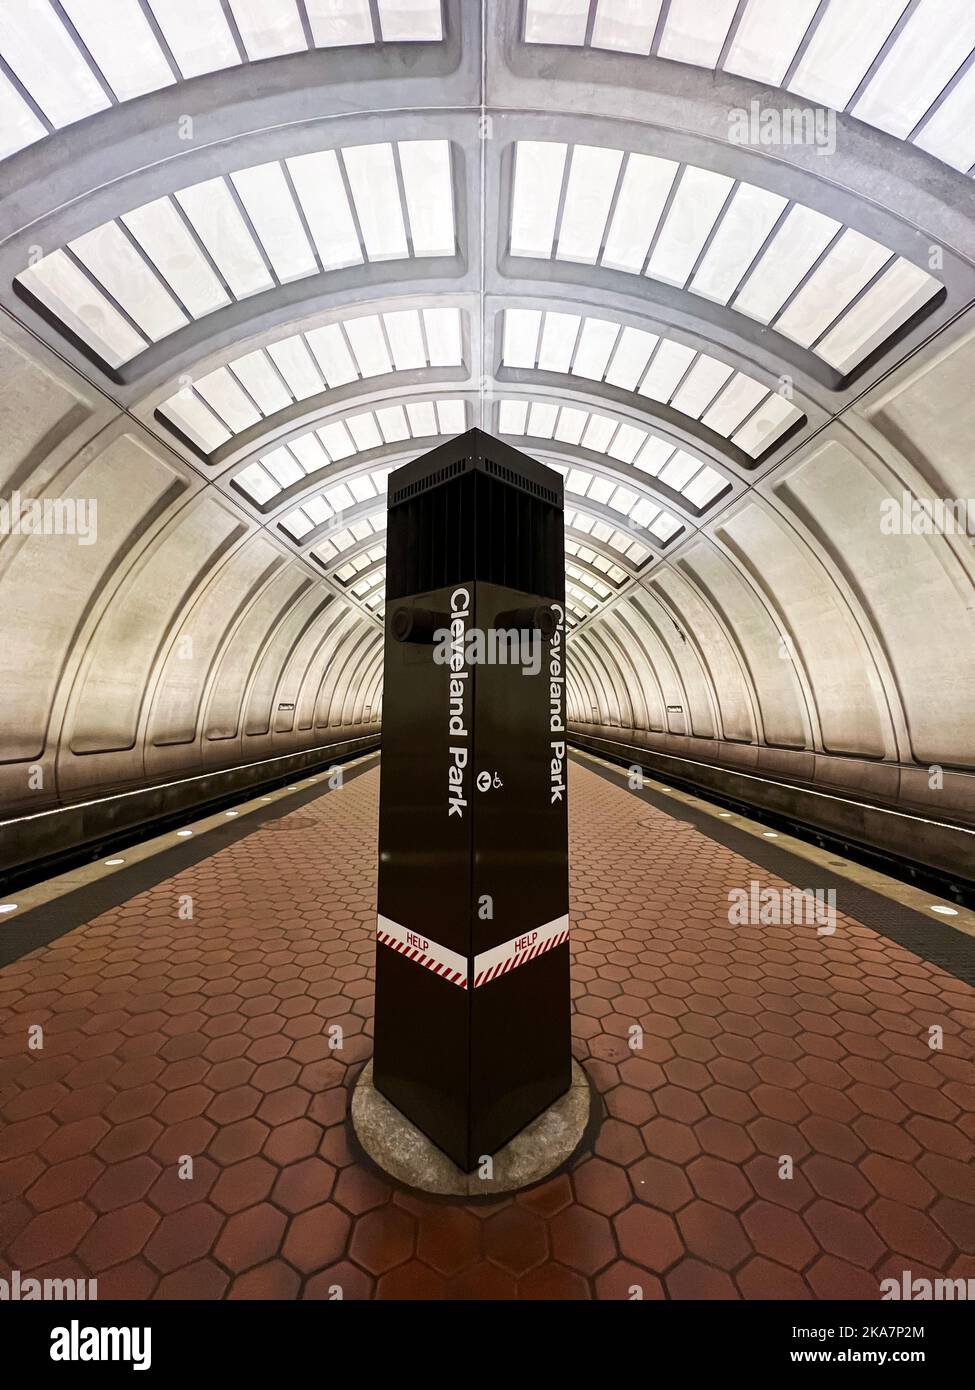 El túnel de la plataforma de la estación de metro de Cleveland Park, sin personas visibles, en Washington, DC. La estación forma parte del sistema WMATA. Foto de stock